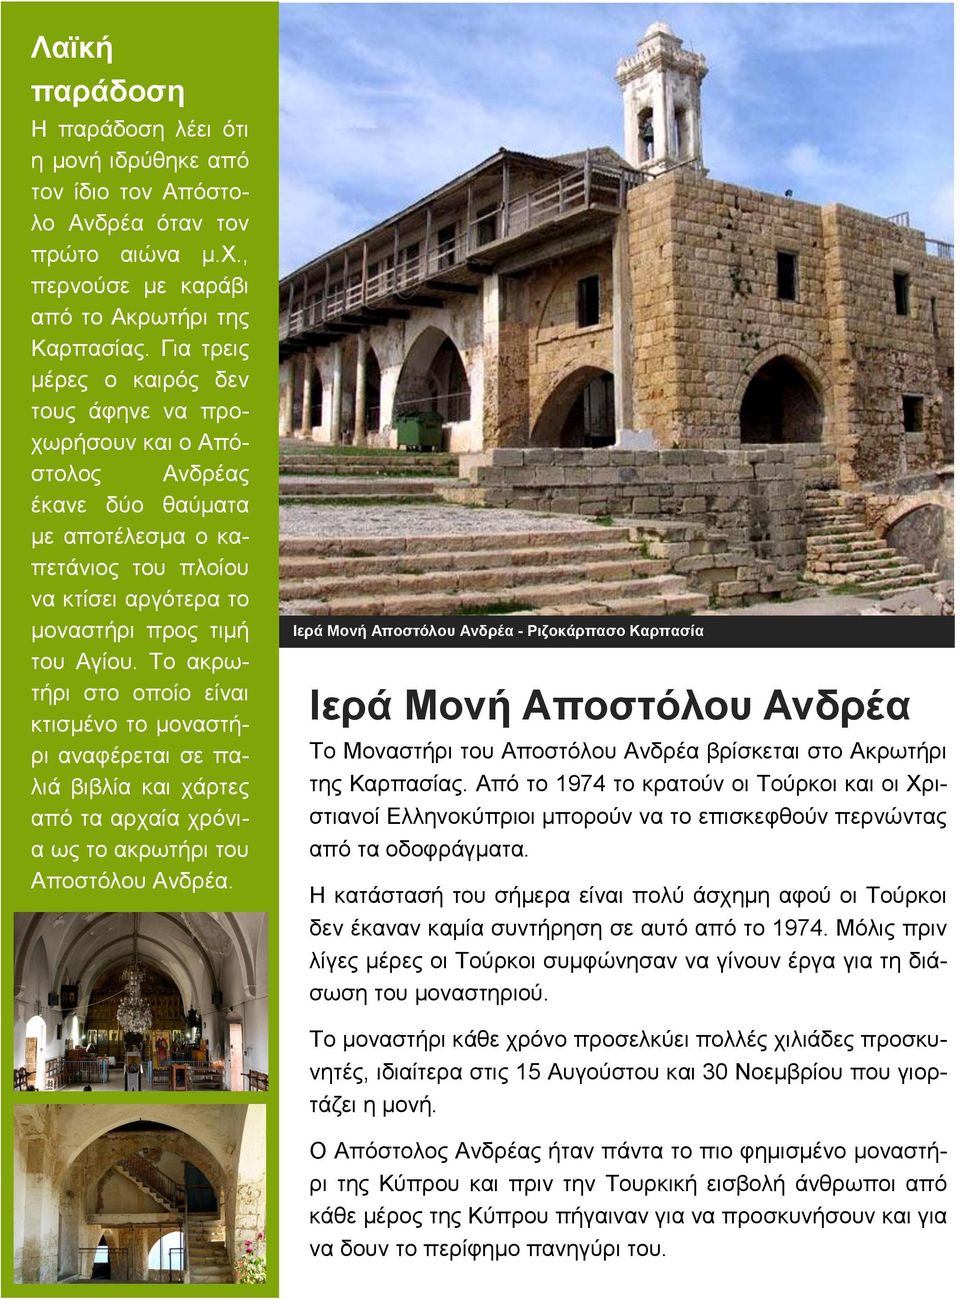 Το ακρωτήρι στο οποίο είναι κτισμένο το μοναστήρι αναφέρεται σε παλιά βιβλία και χάρτες από τα αρχαία χρόνια ως το ακρωτήρι του Αποστόλου Ανδρέα.